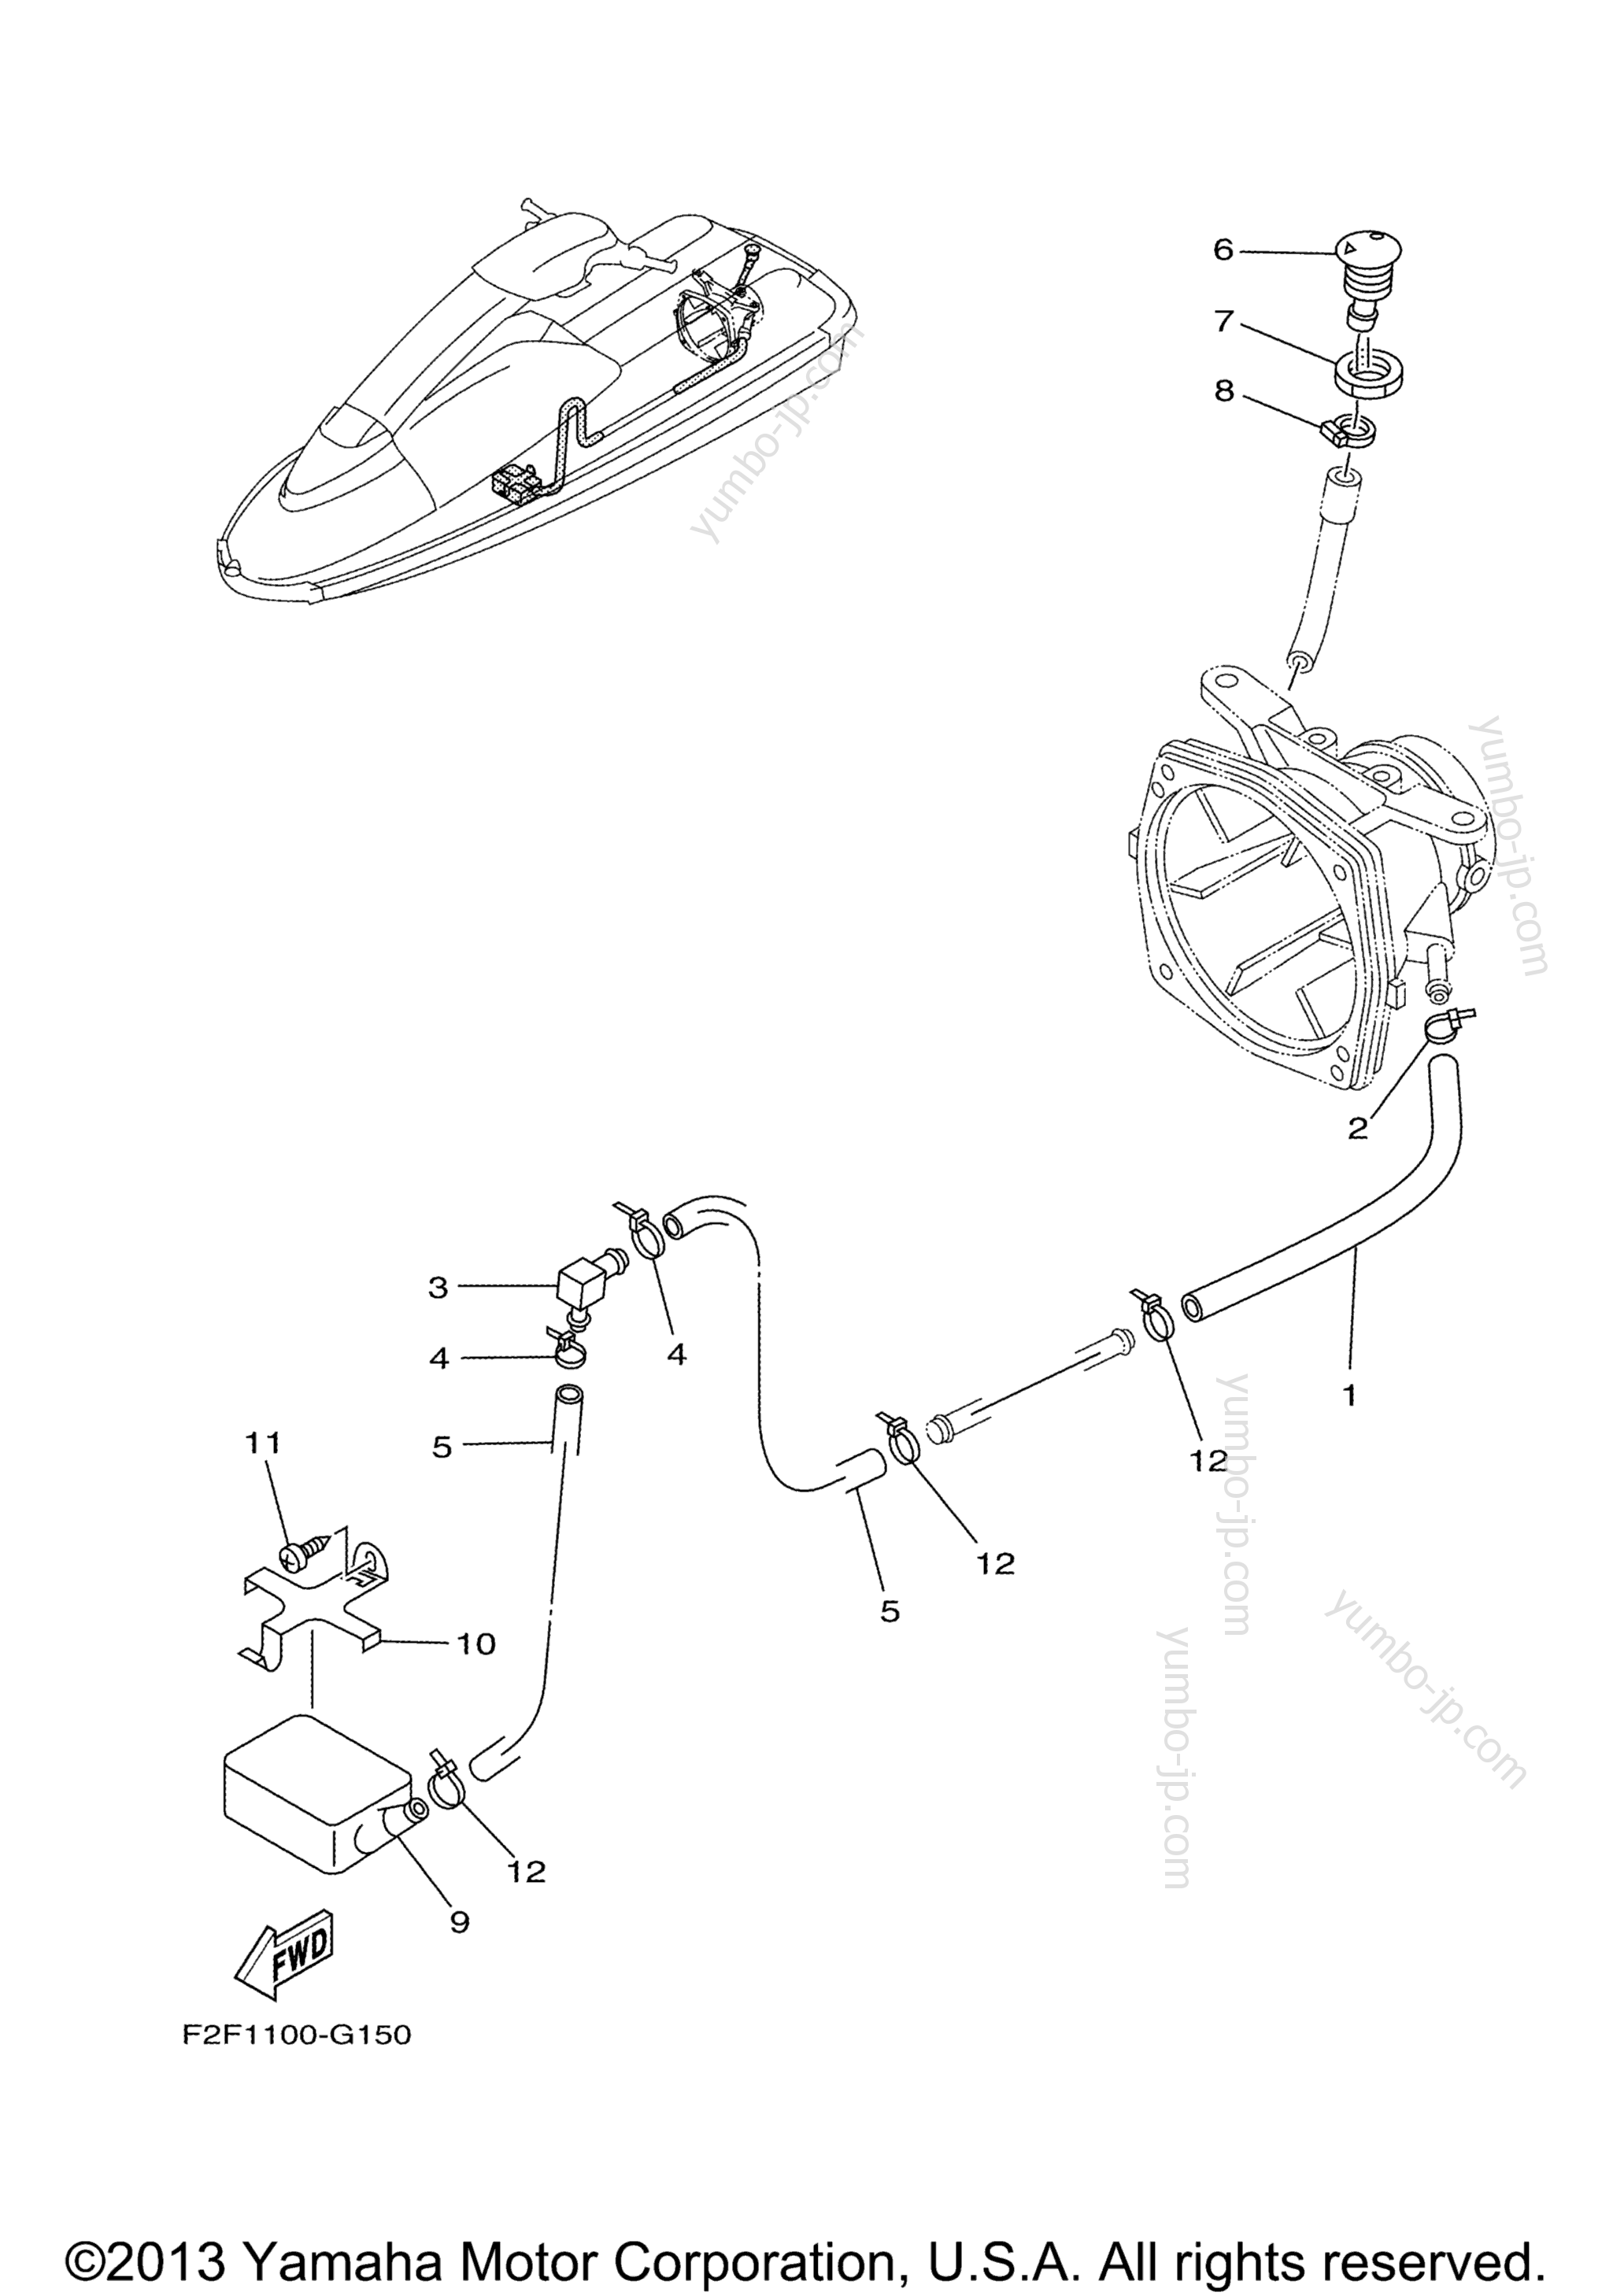 Hull & Deck для гидроциклов YAMAHA SUPER JET (SJ700BJ) 2010 г.